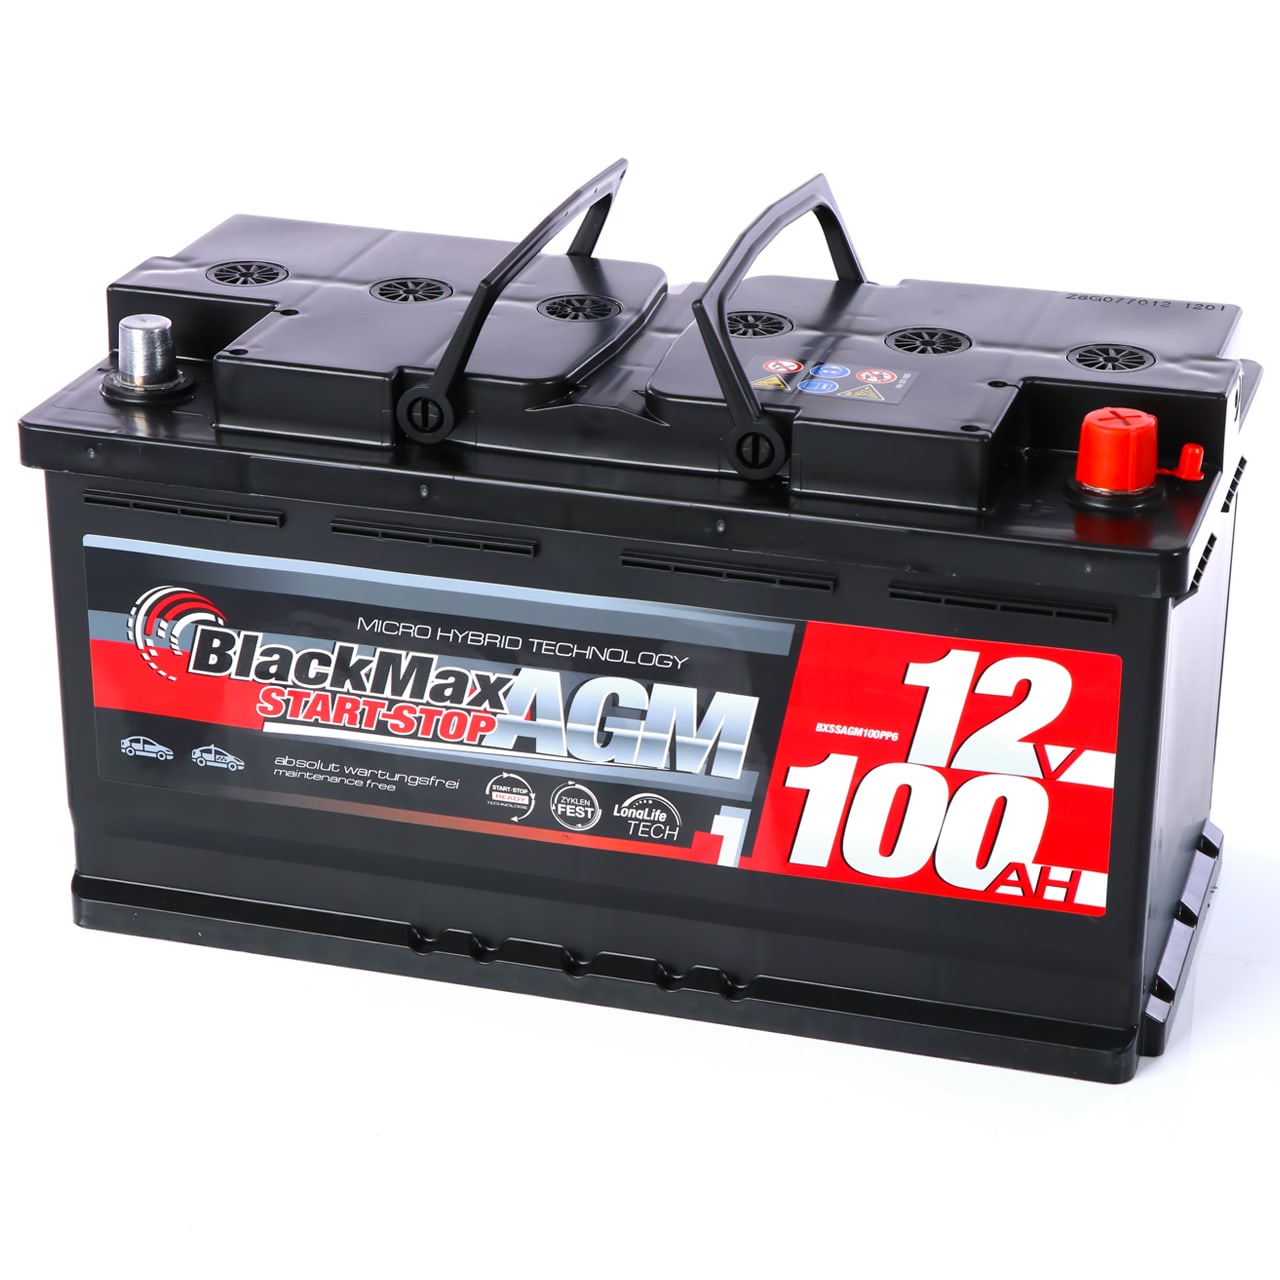 120A Batterie-Schnellkupplung, DC600V Max. 4 AWG, elektrischer